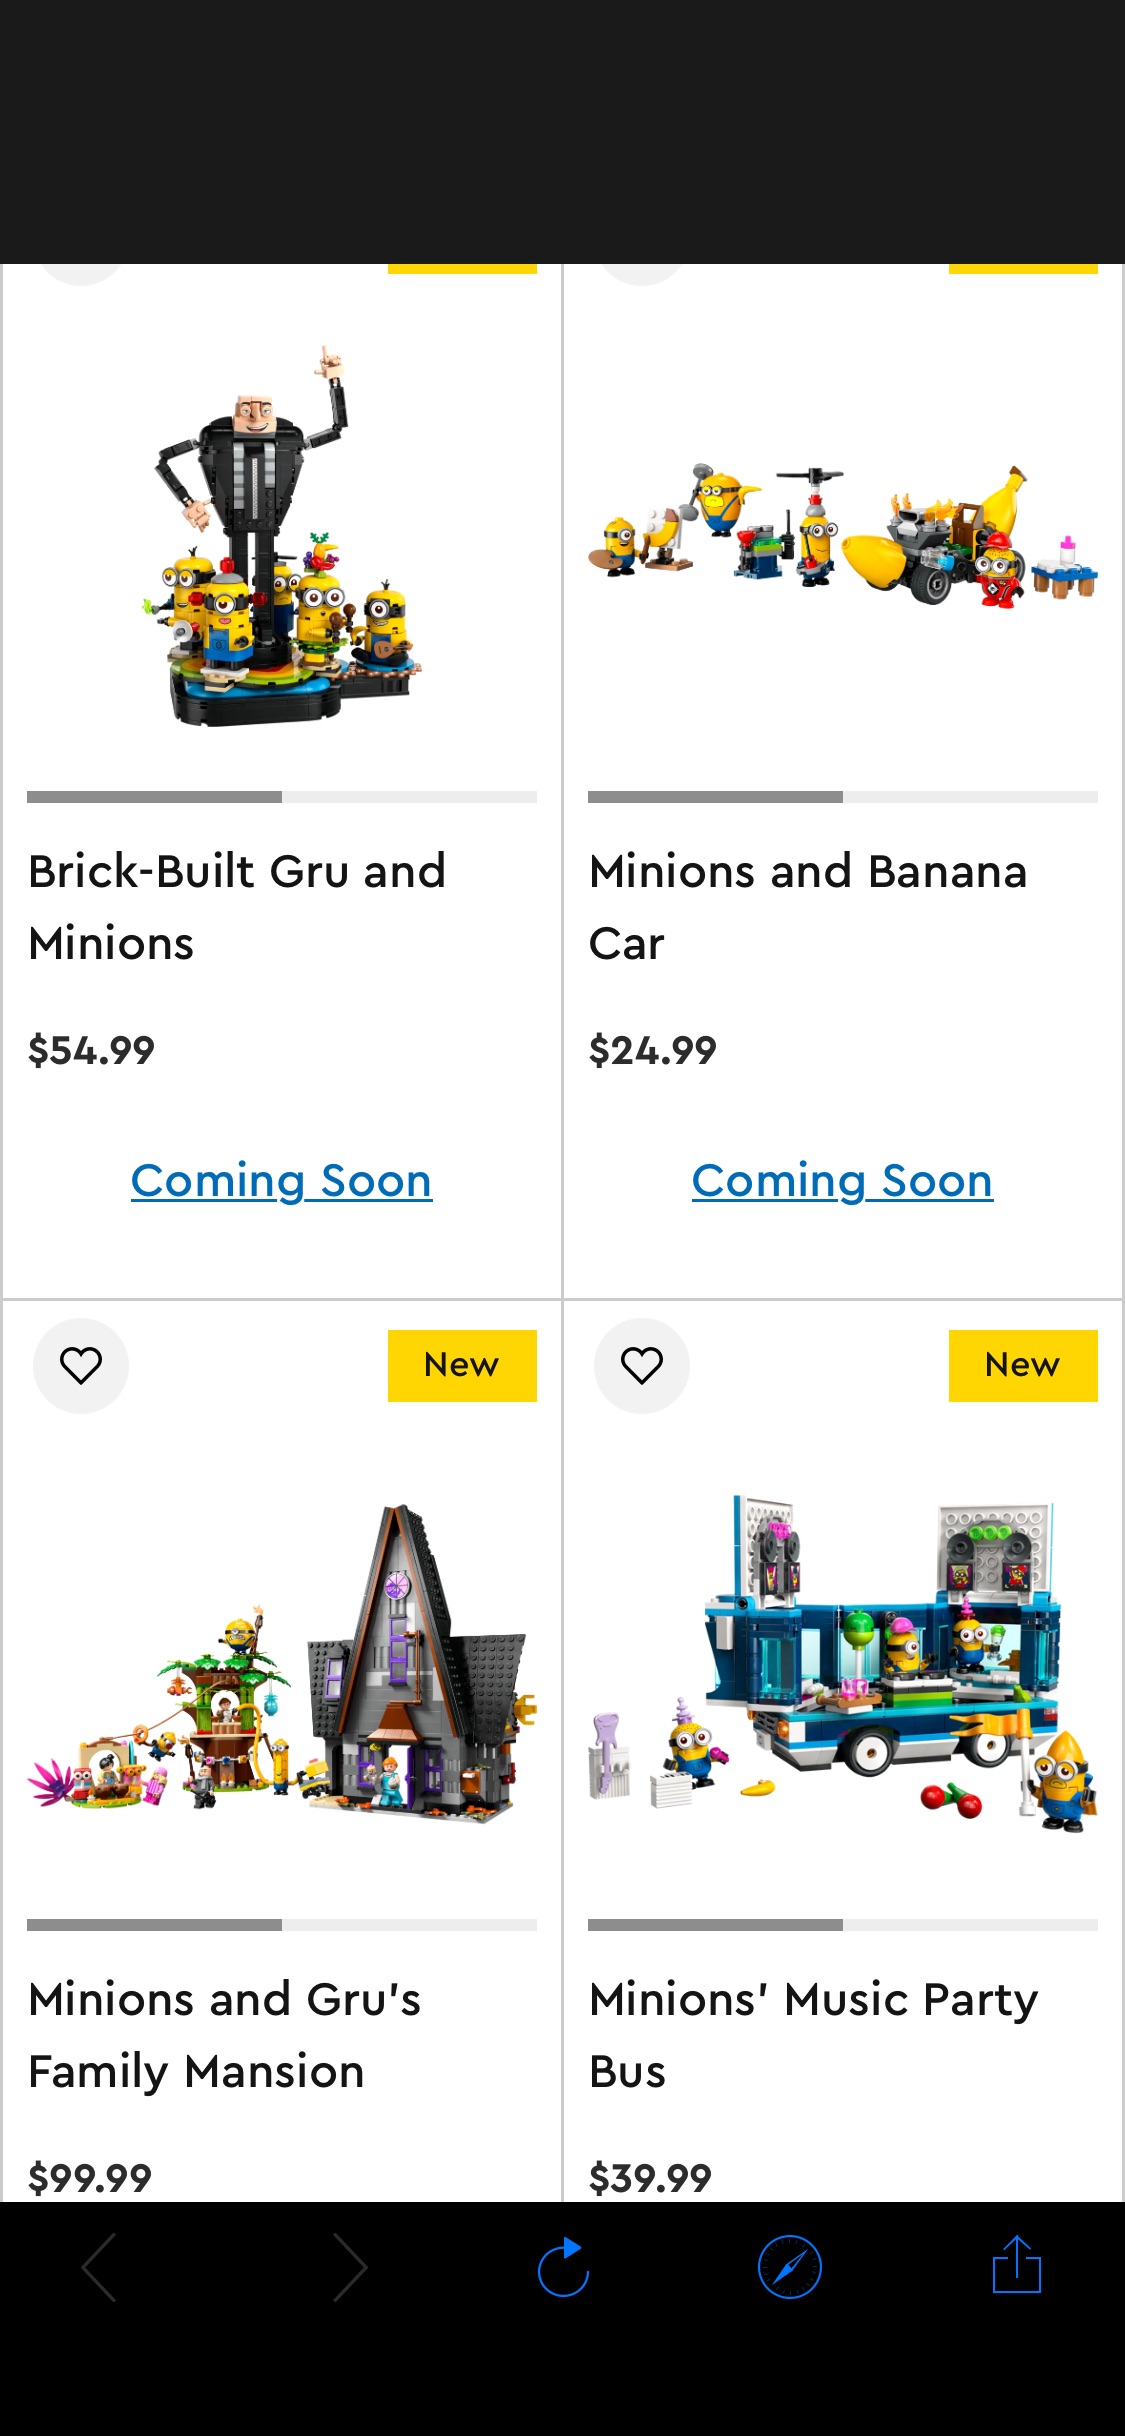 LEGO 小黄人/神偷奶爸 即将于5/1上市 太可爱了吧